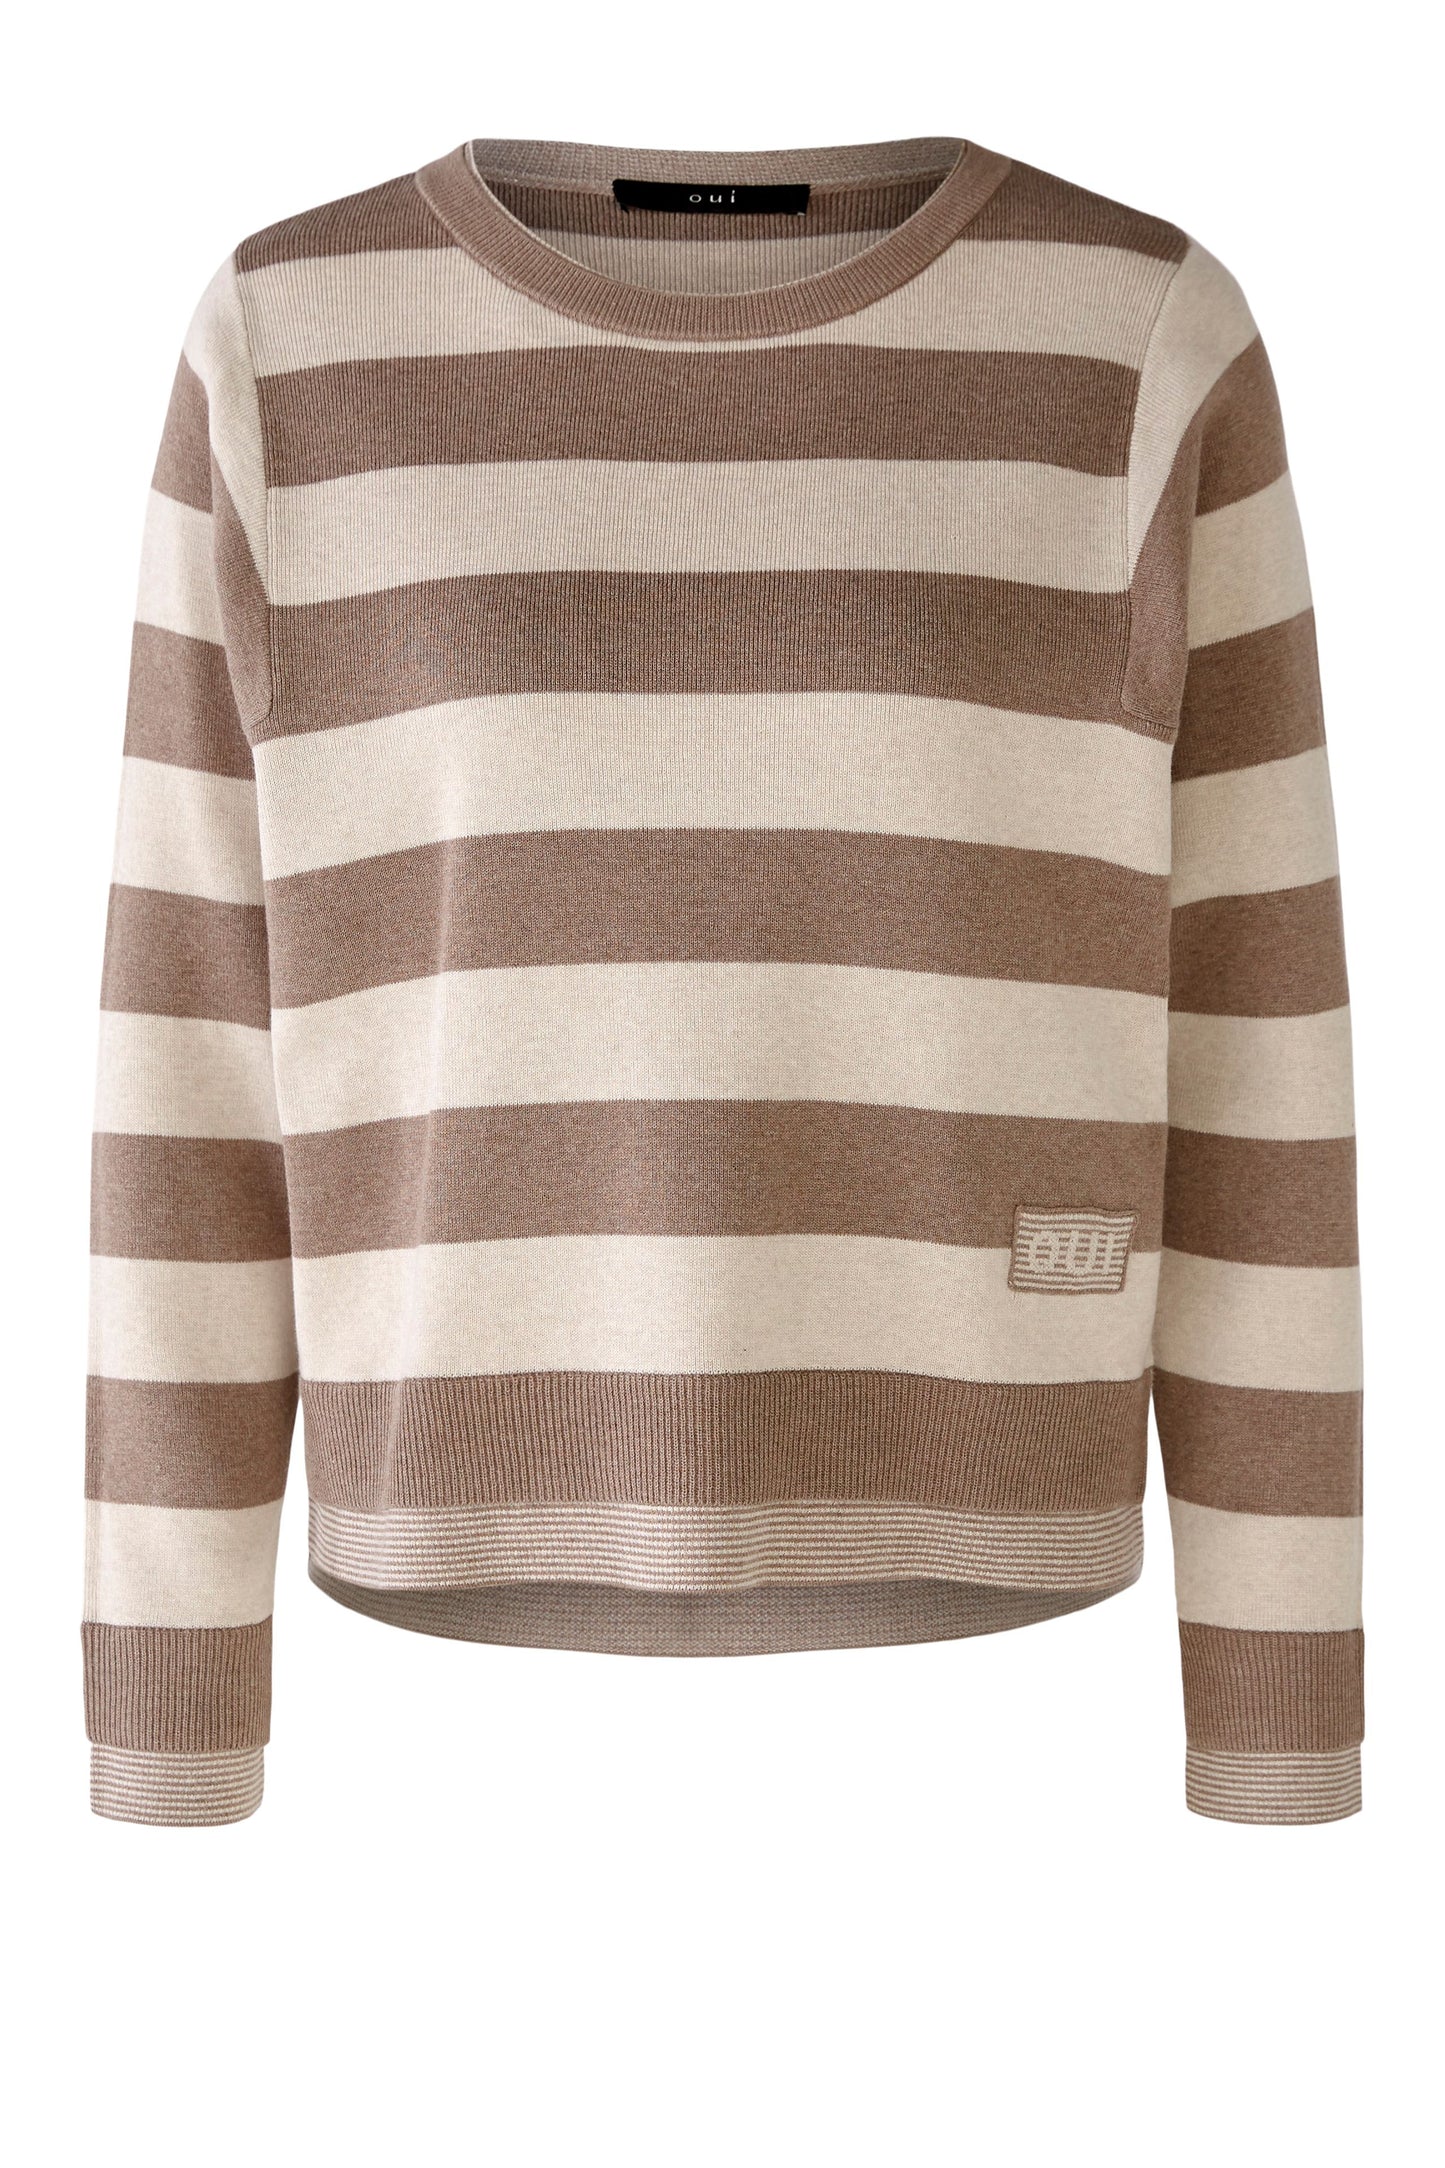 Oui Cotton Stripe Sweater